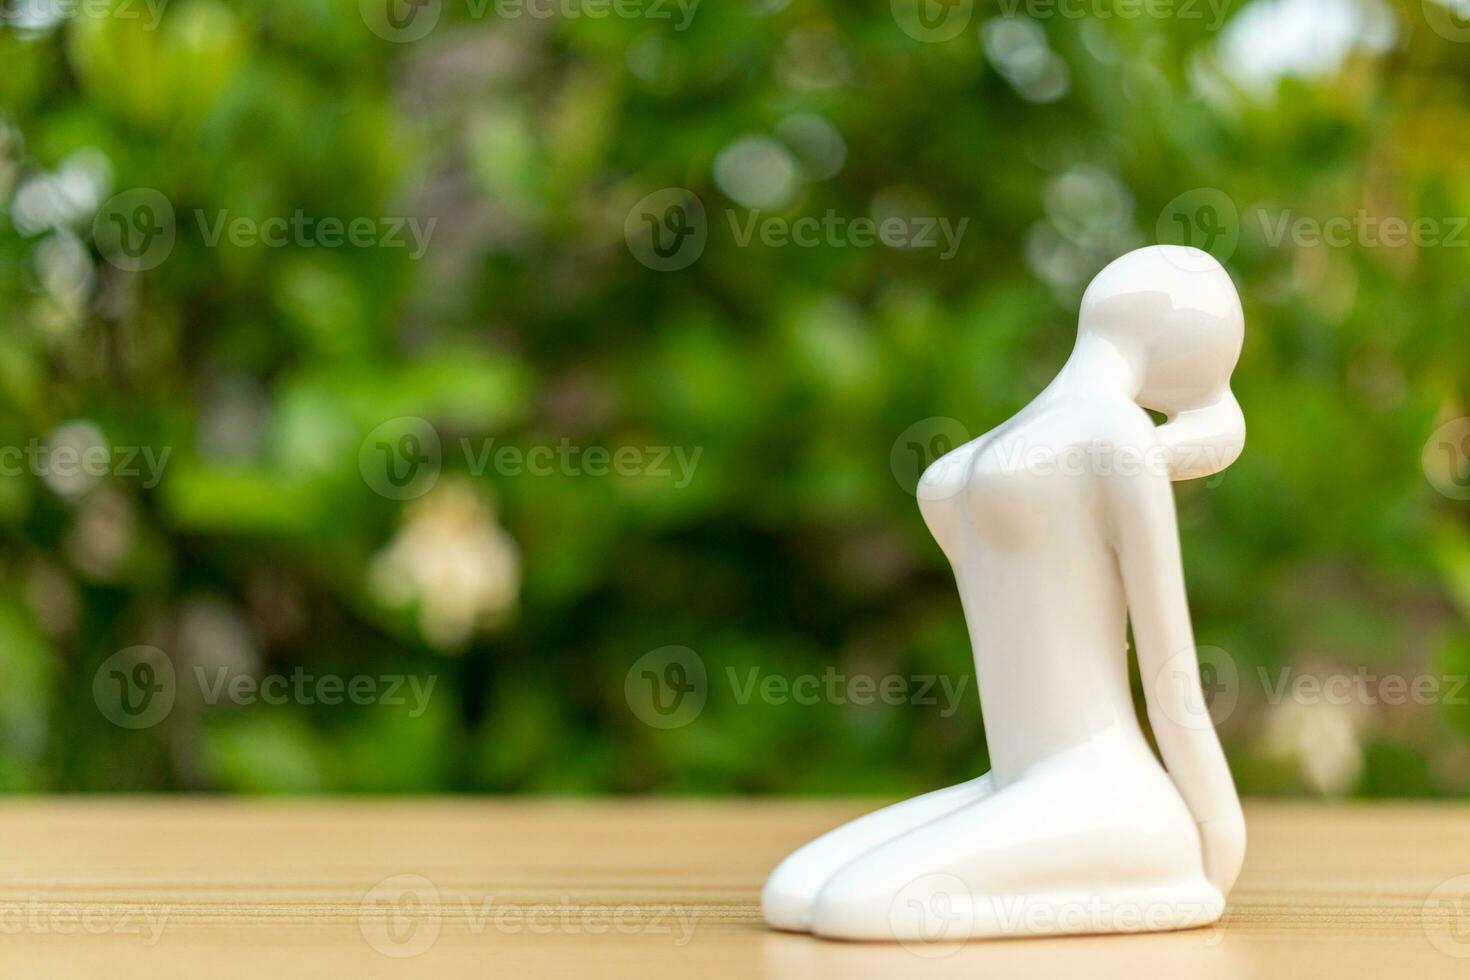 cerâmico ioga estatueta do mulher fazendo ioga pose em de madeira chão e verde folha fundo foto